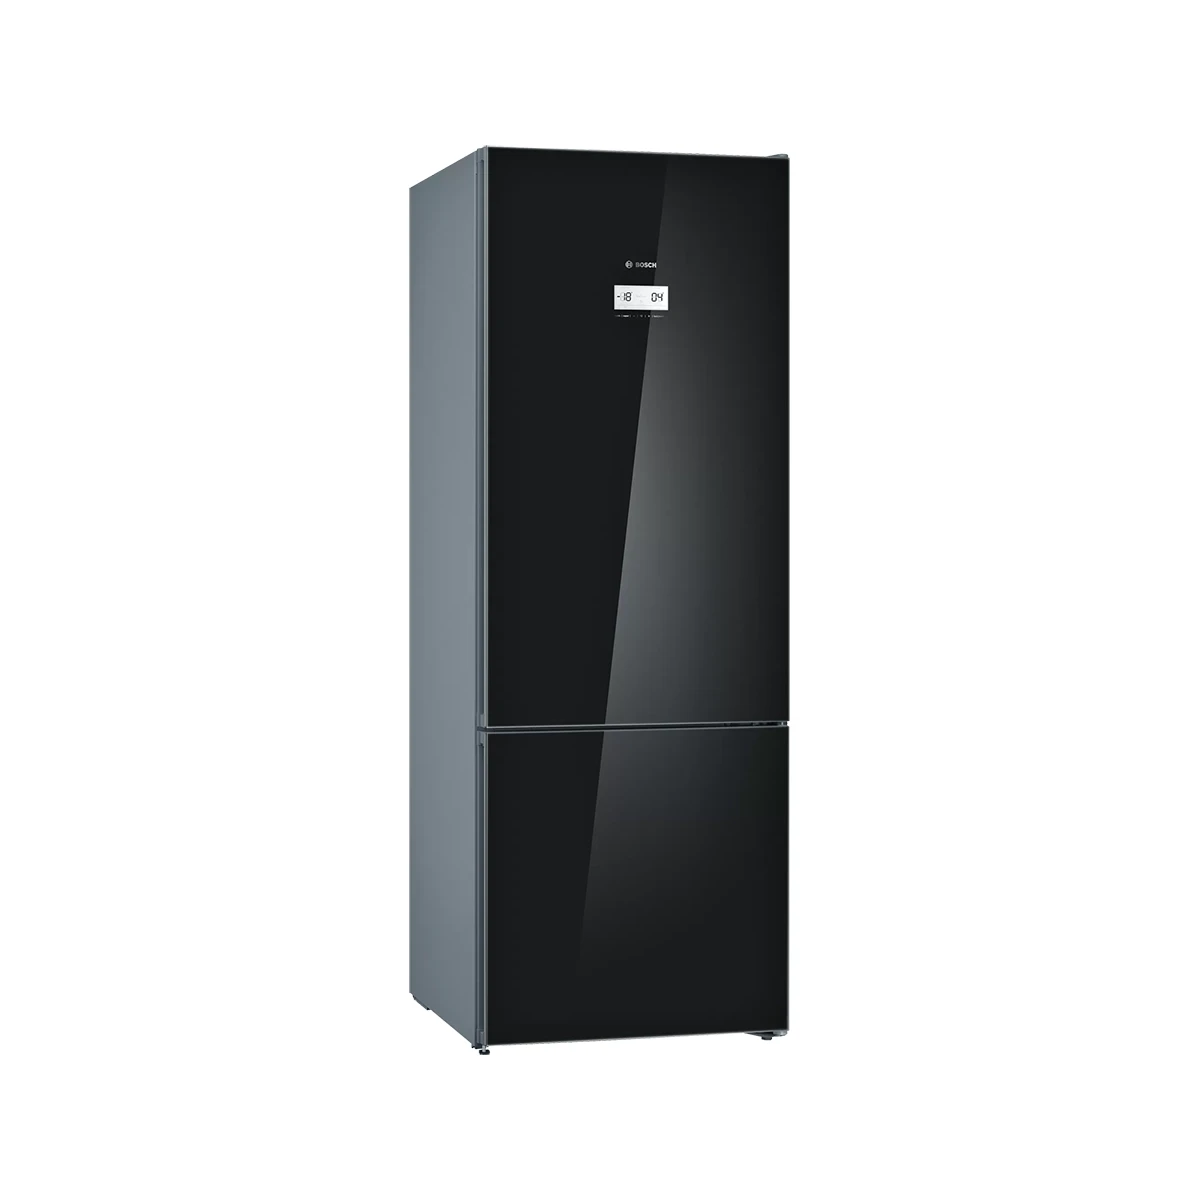 BOSCH Series 6 standing fridge-freezer with freezer at bottom, glass door 193 x 70 cm Black